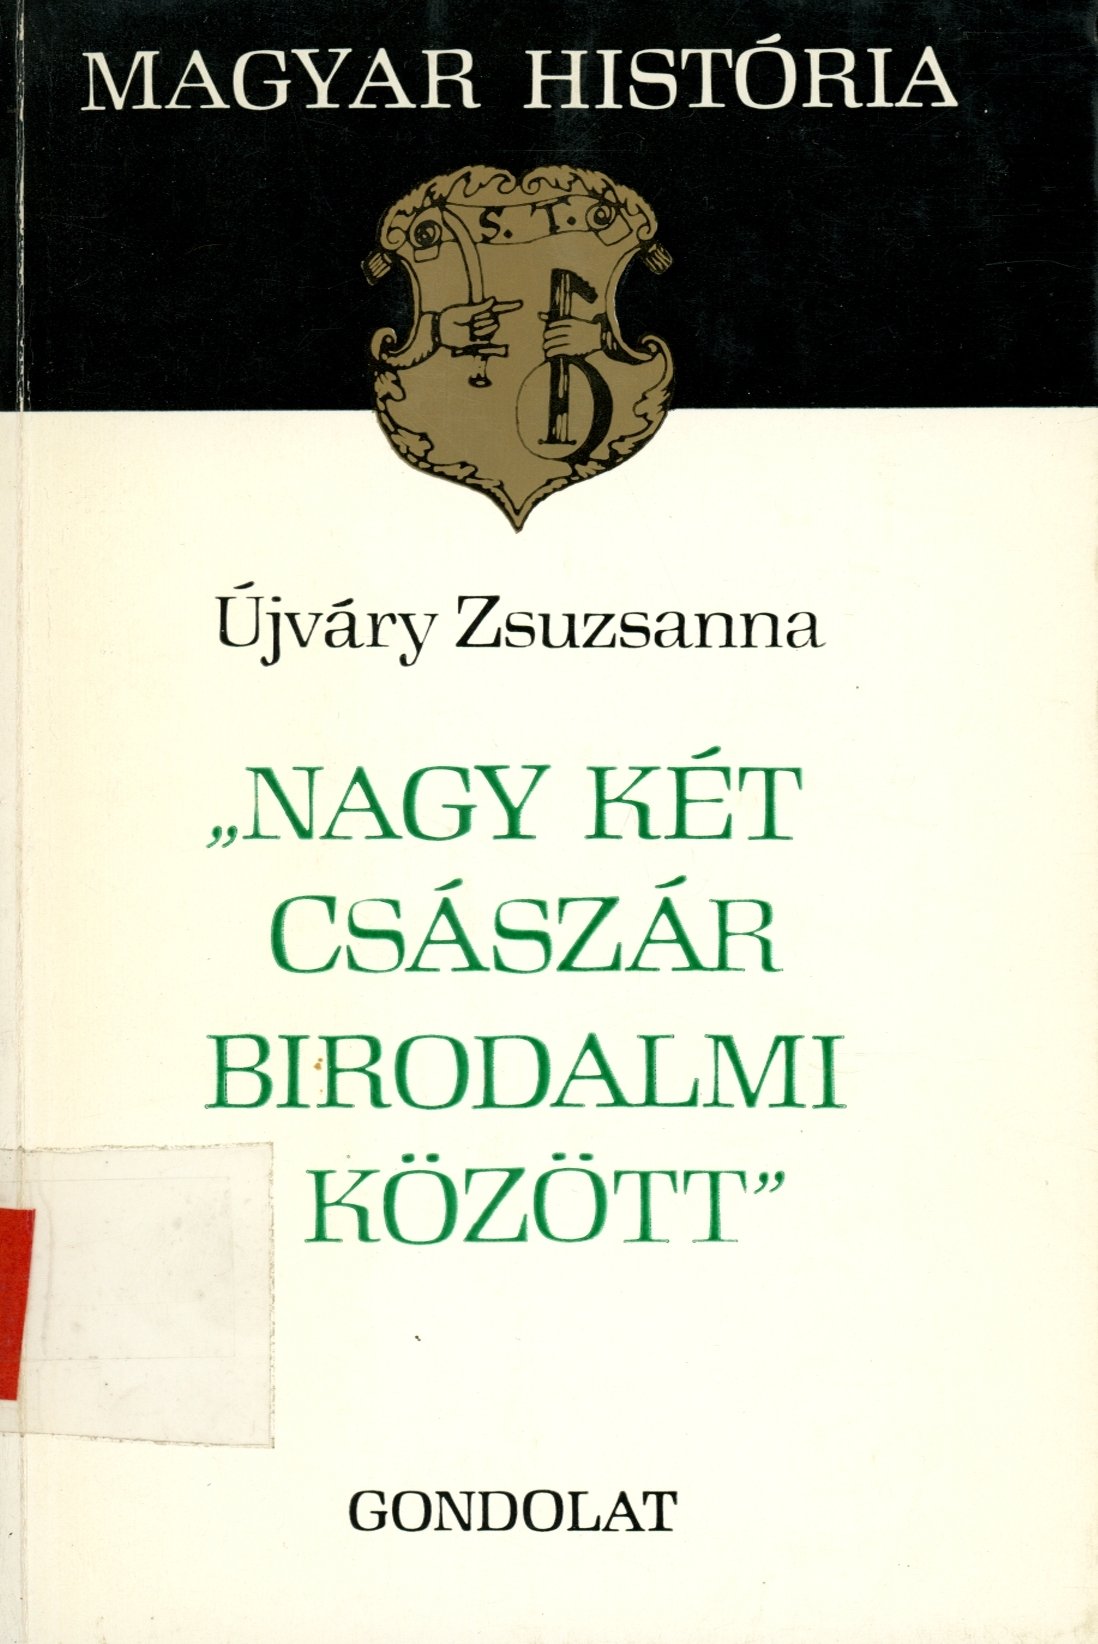 Újváry Zsuzsanna (Erkel Ferenc Múzeum és Könyvtár, Gyula CC BY-NC-SA)